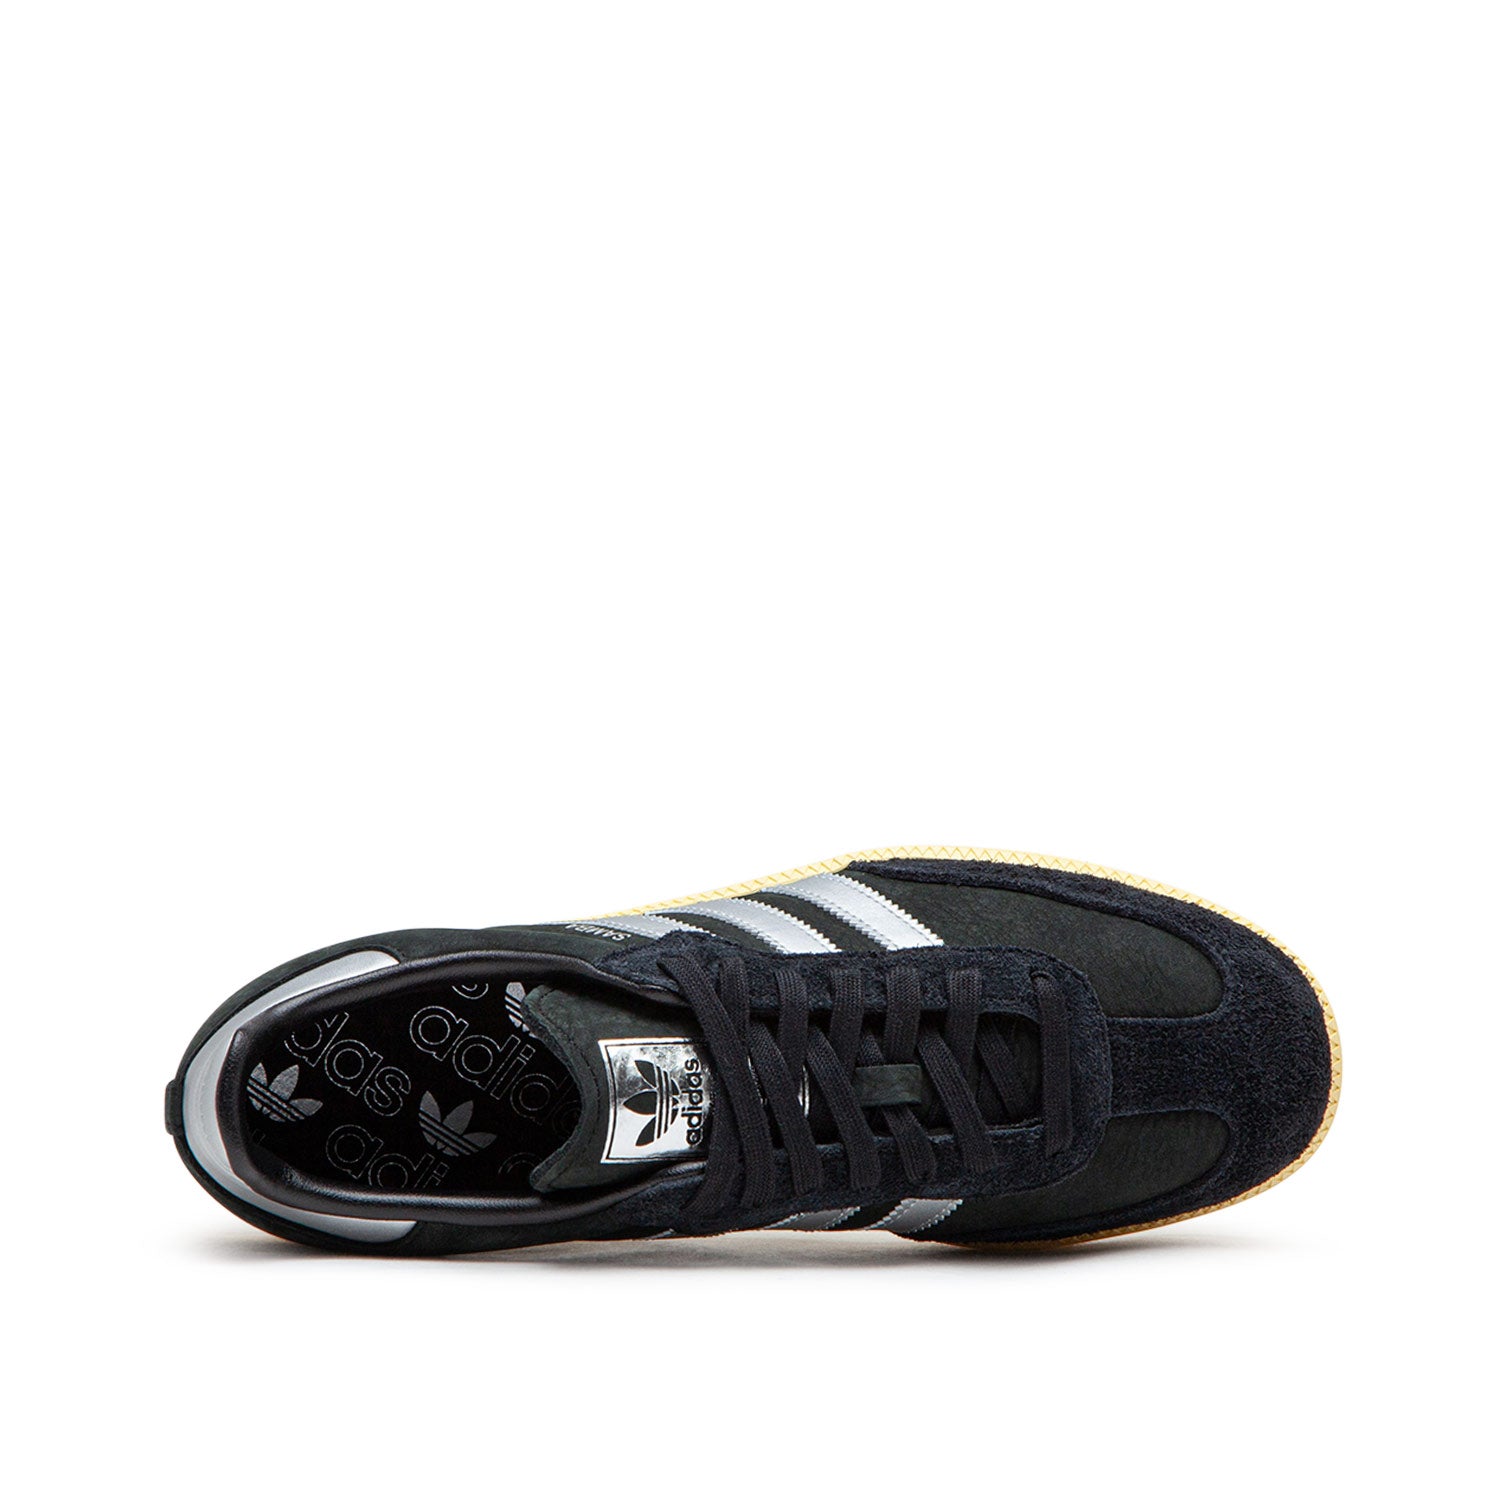 adidas WMNS Samba OG (Schwarz / Silber)  - Cheap Juzsports Jordan Outlet